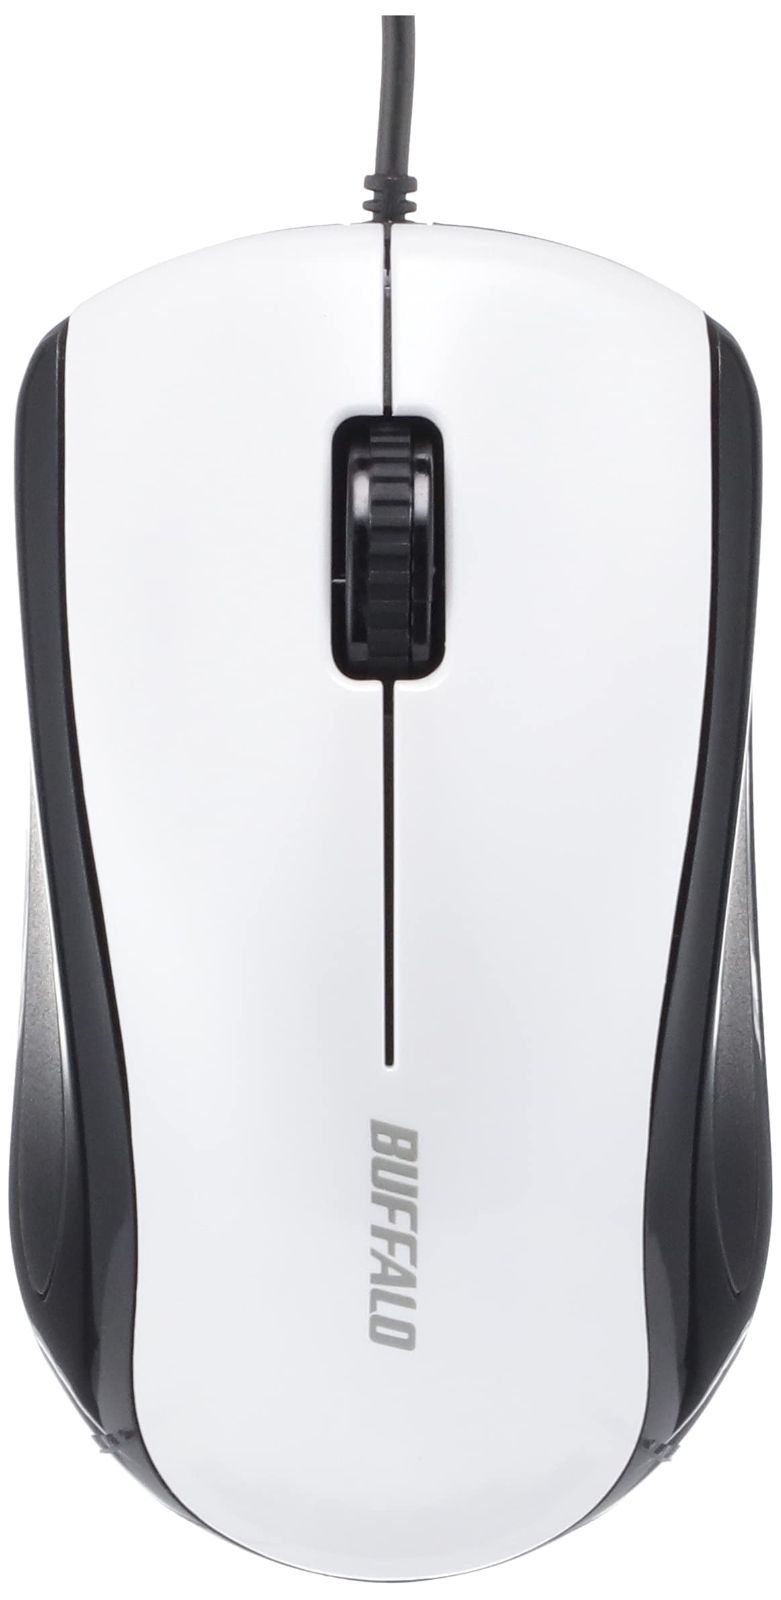 バッファロー BSMLU100BK 有線 レーザー 3ボタンマウス ブラック 送料無料 マウス